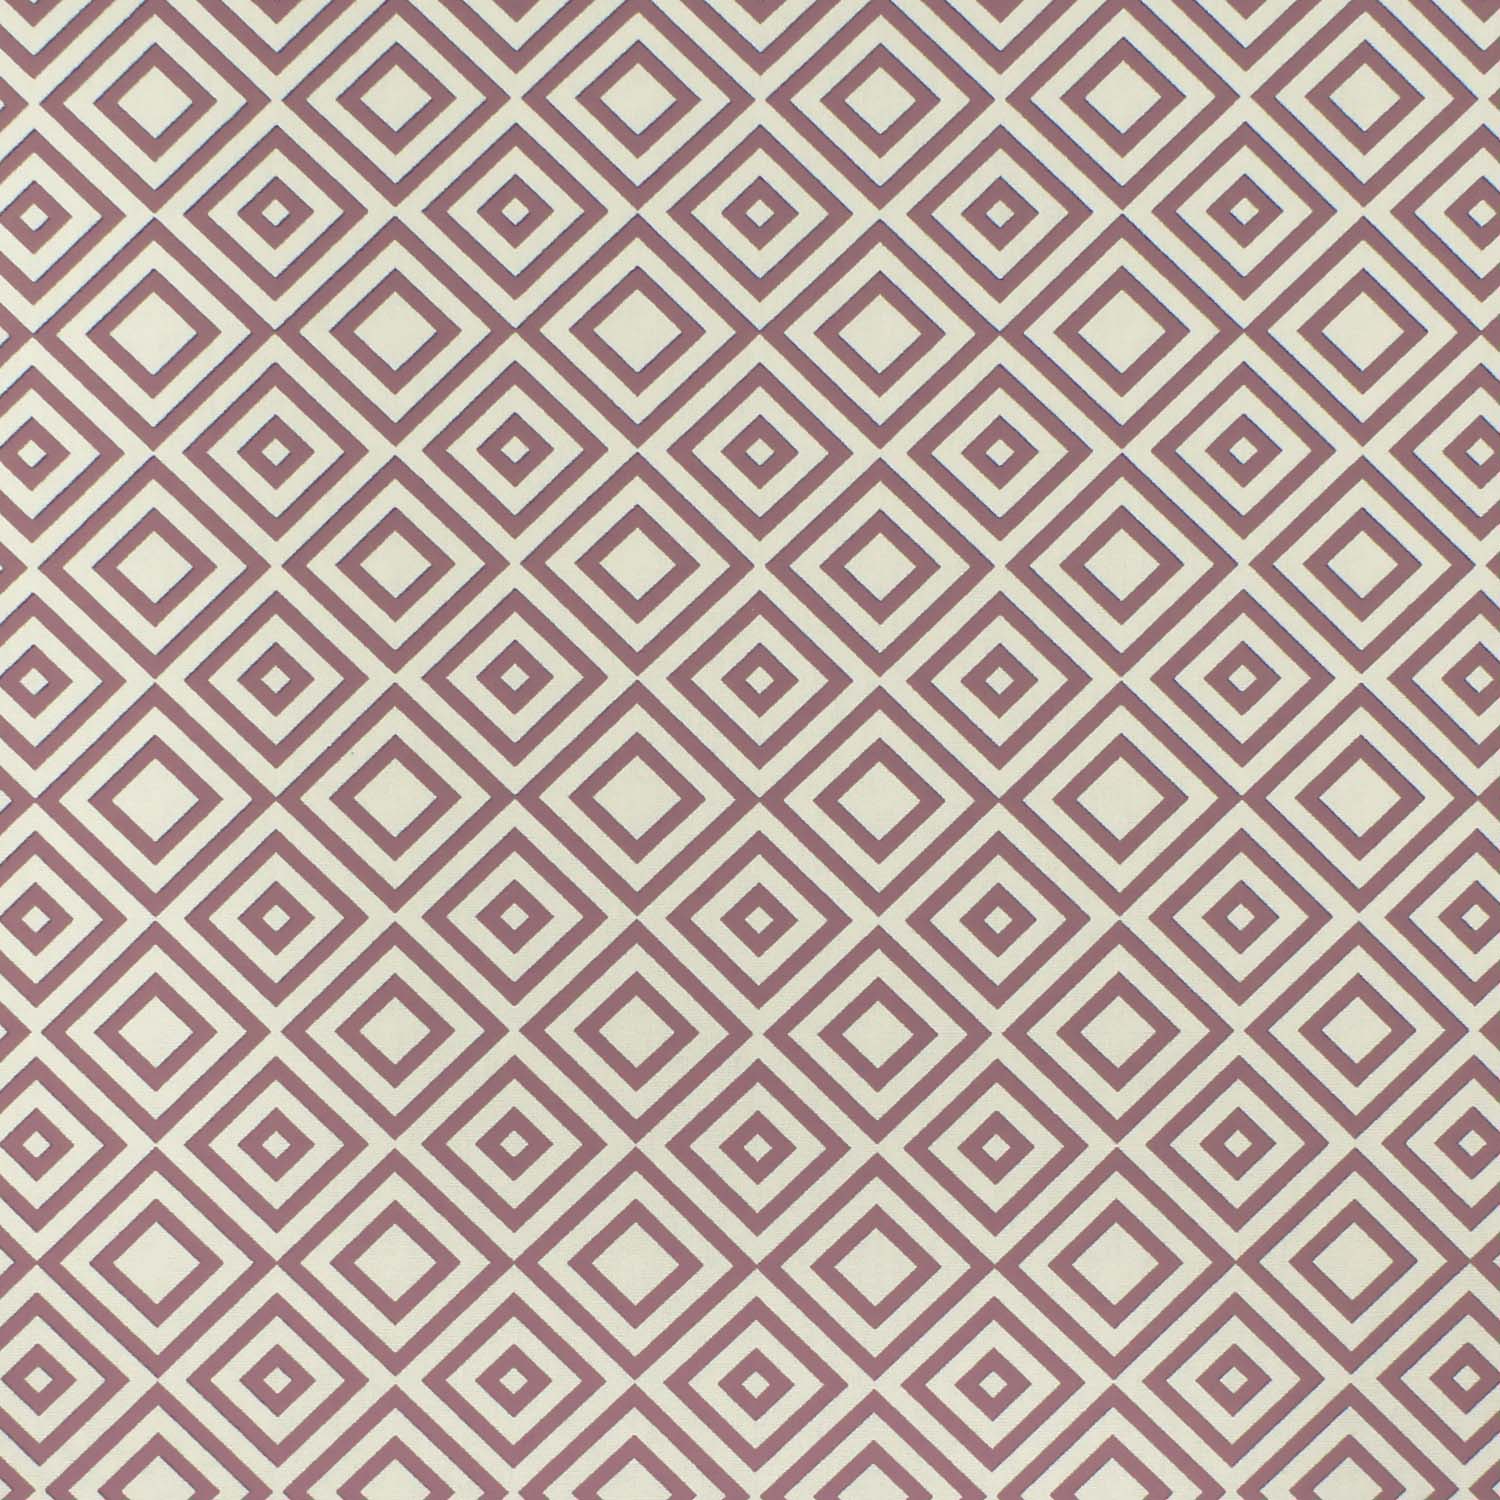 tecido-tricoline-textura-geometrico-fundo-rosa-envelhecido-della-aviamentos-10949